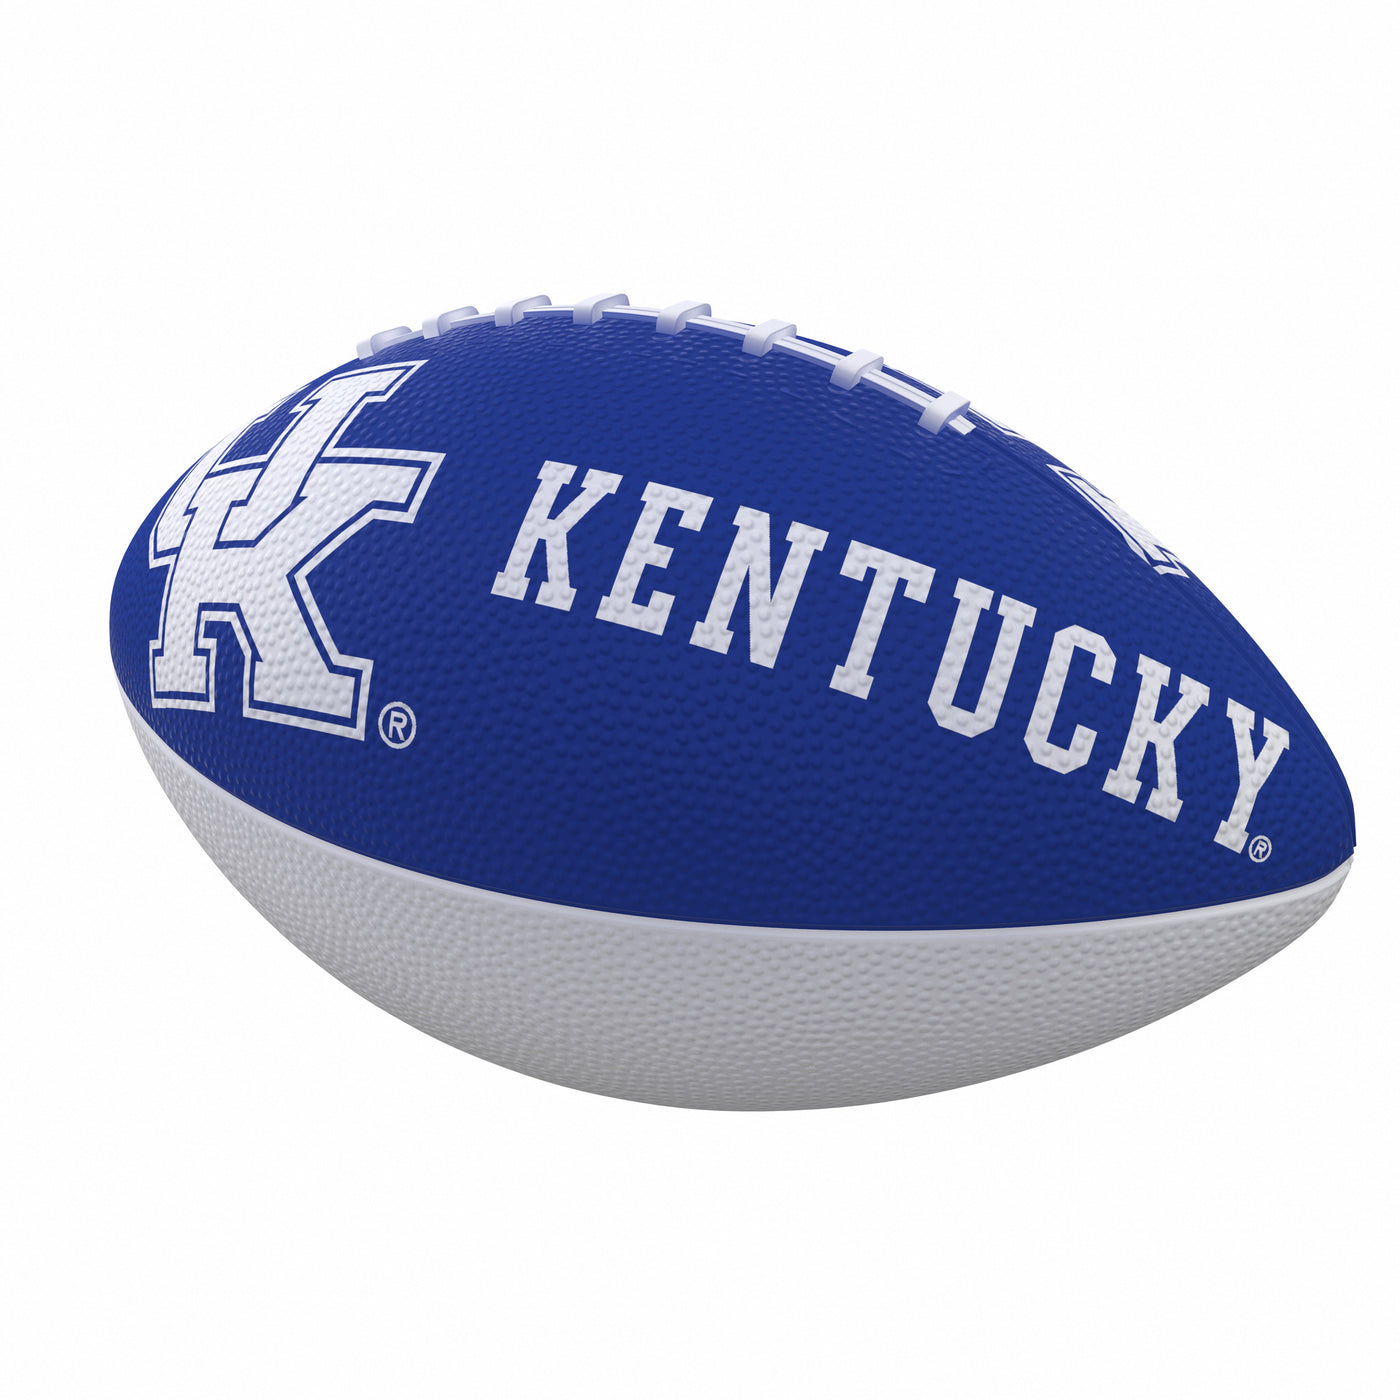 Kentucky Combo Logo Junior-Size Rubber Football